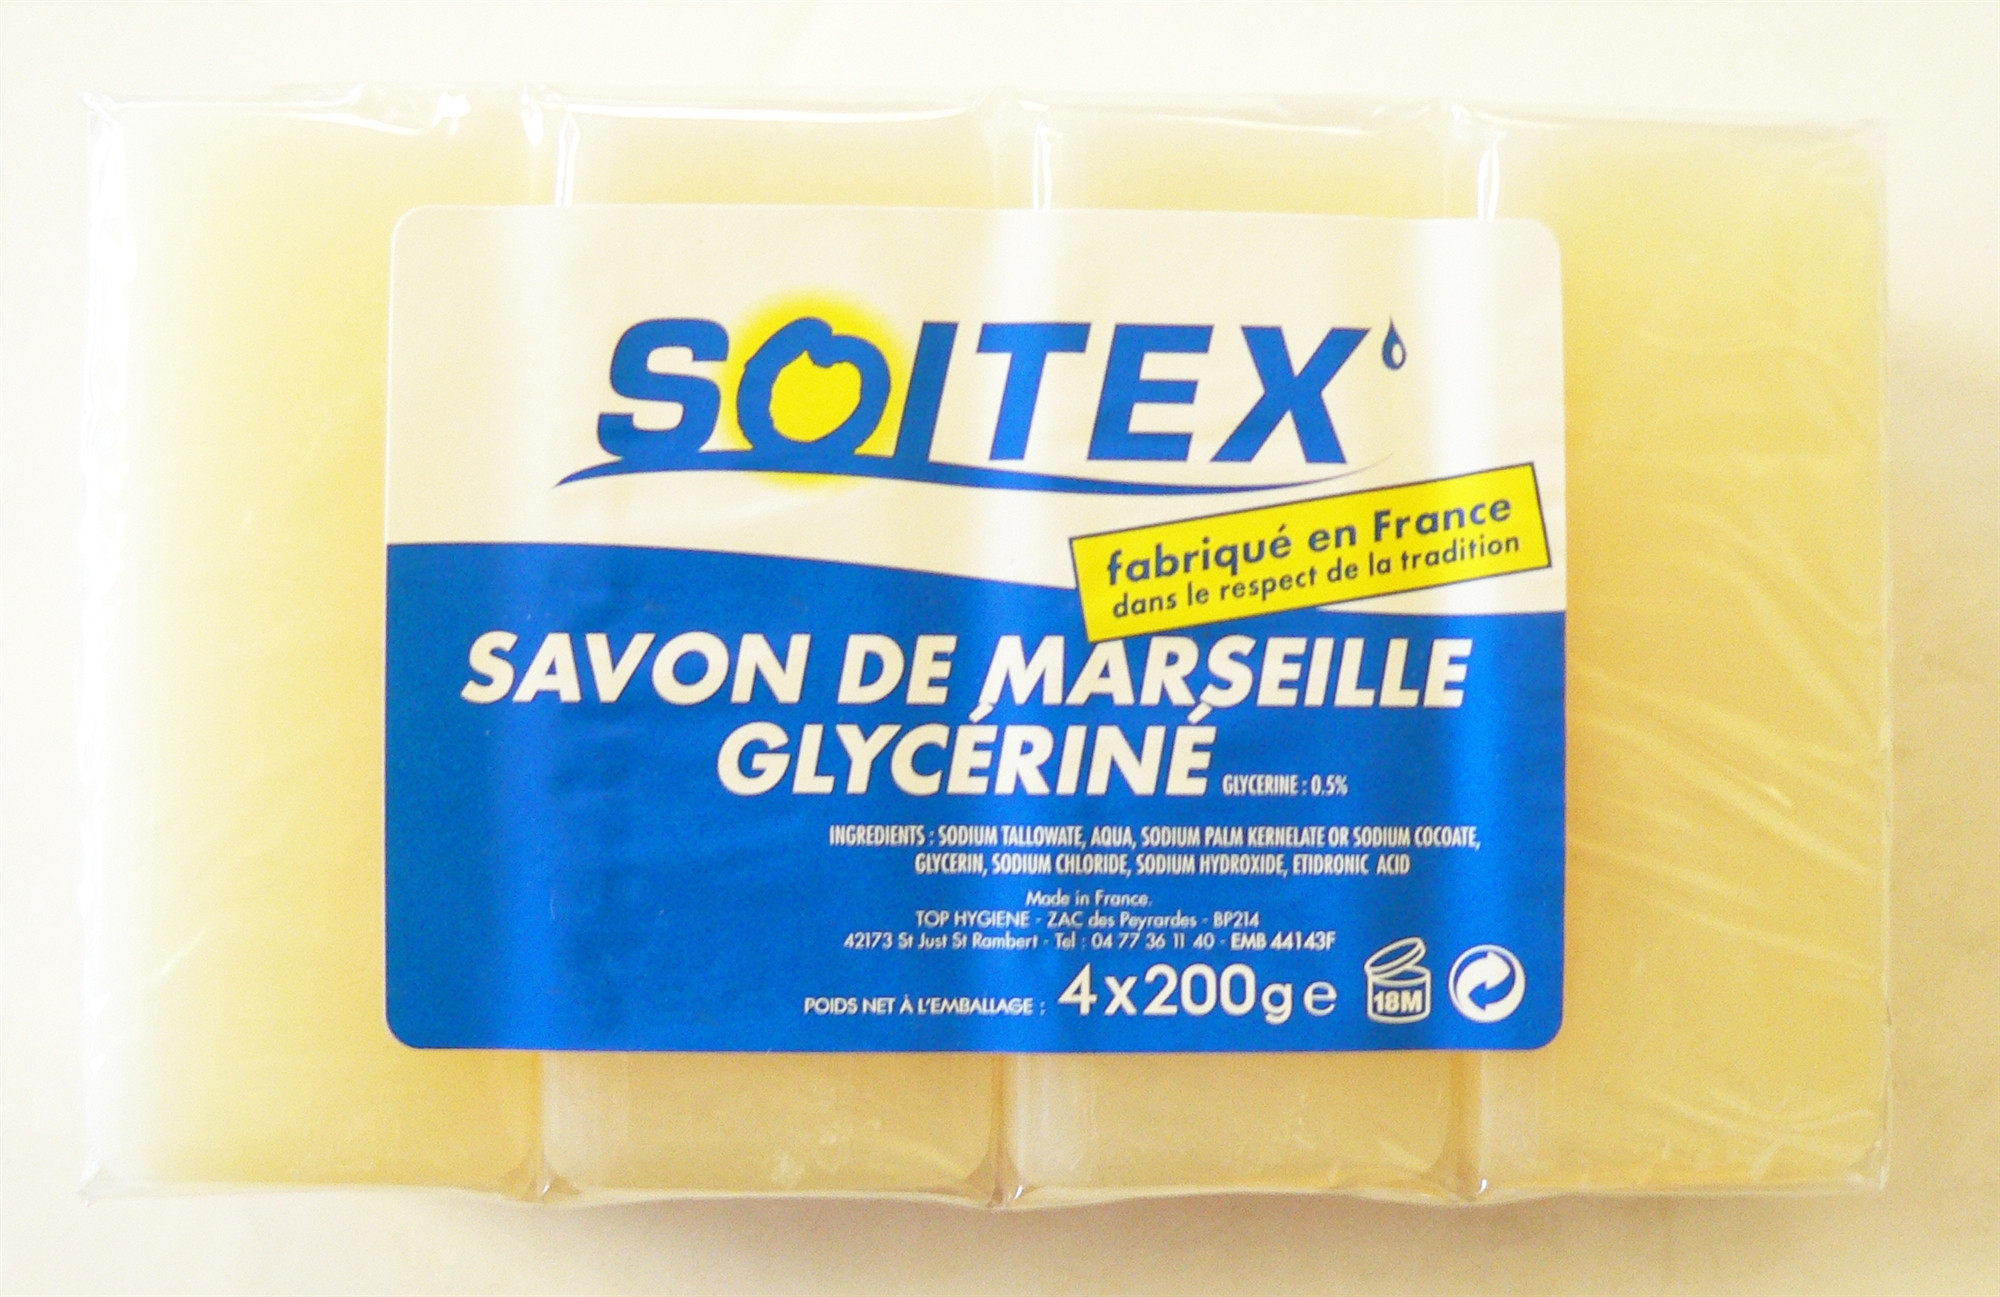 Savons de Marseille glycériné SOITEX - PROVEN - 600g - Produits